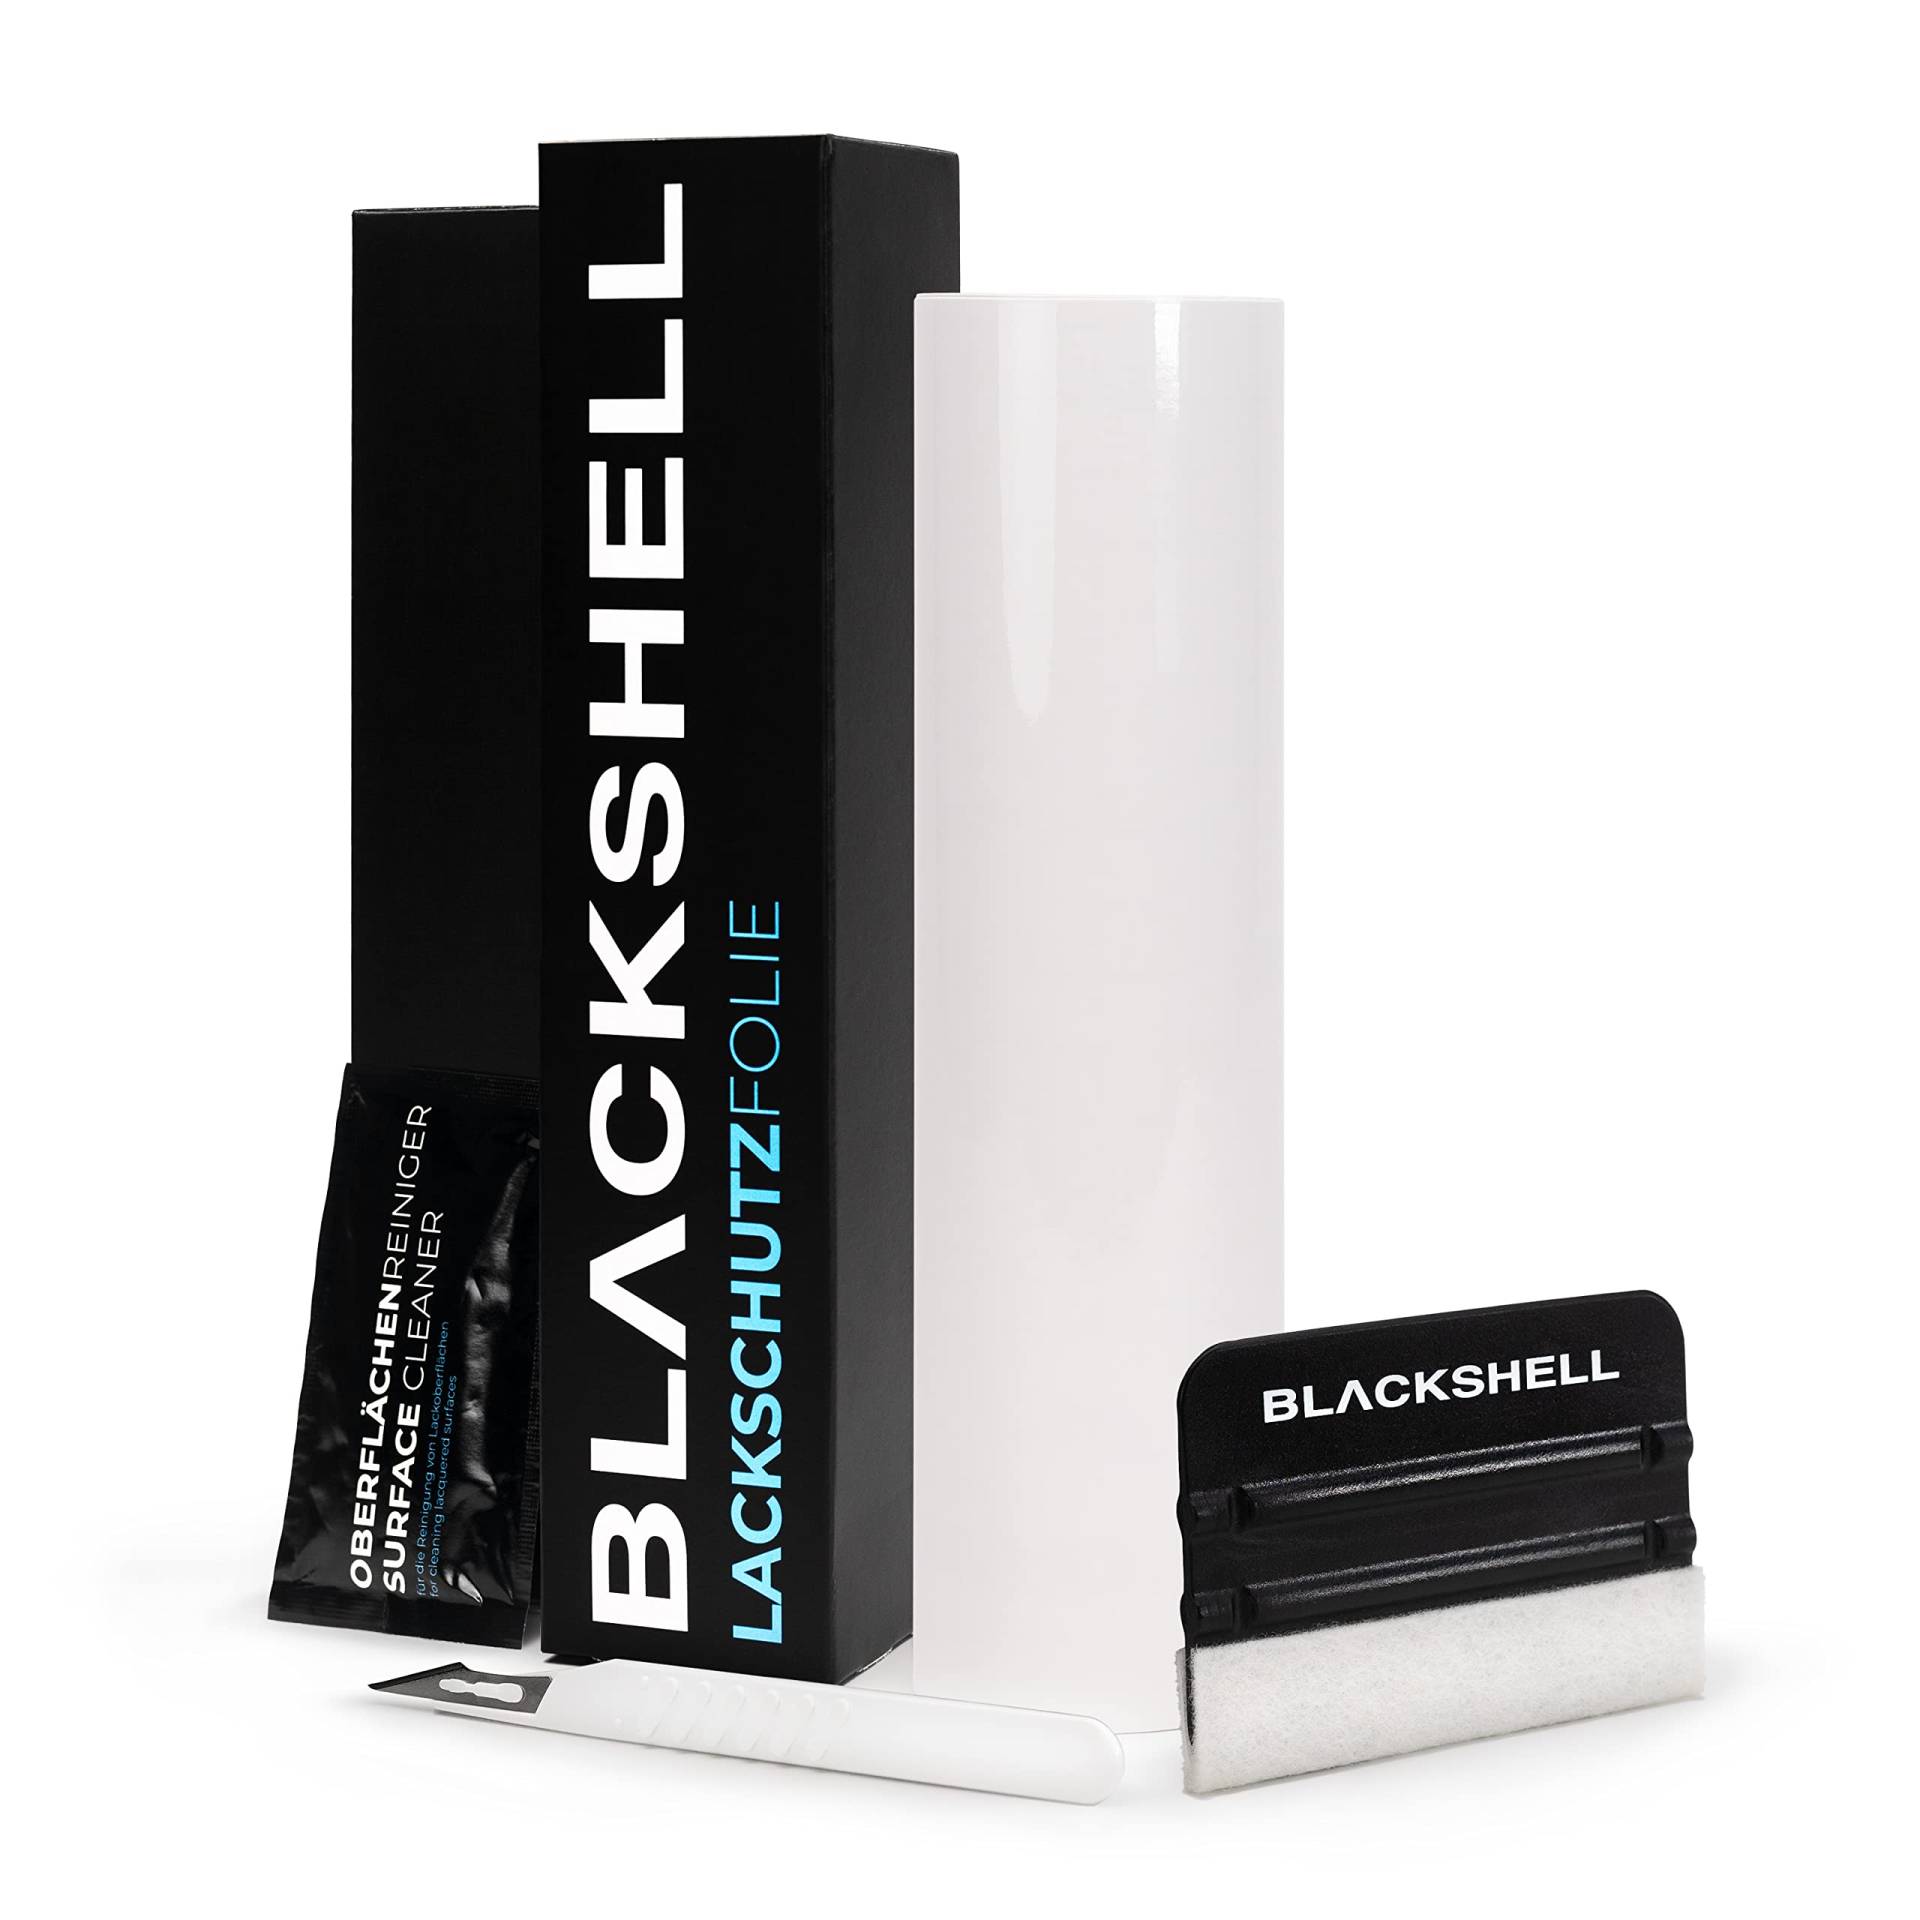 Blackshell® Universal Lackschutzfolie transparent, Folie selbstklebend - universal einsetzbar auf allen glatten Oberflächen - individuelle Größenauswahl von Blackshell